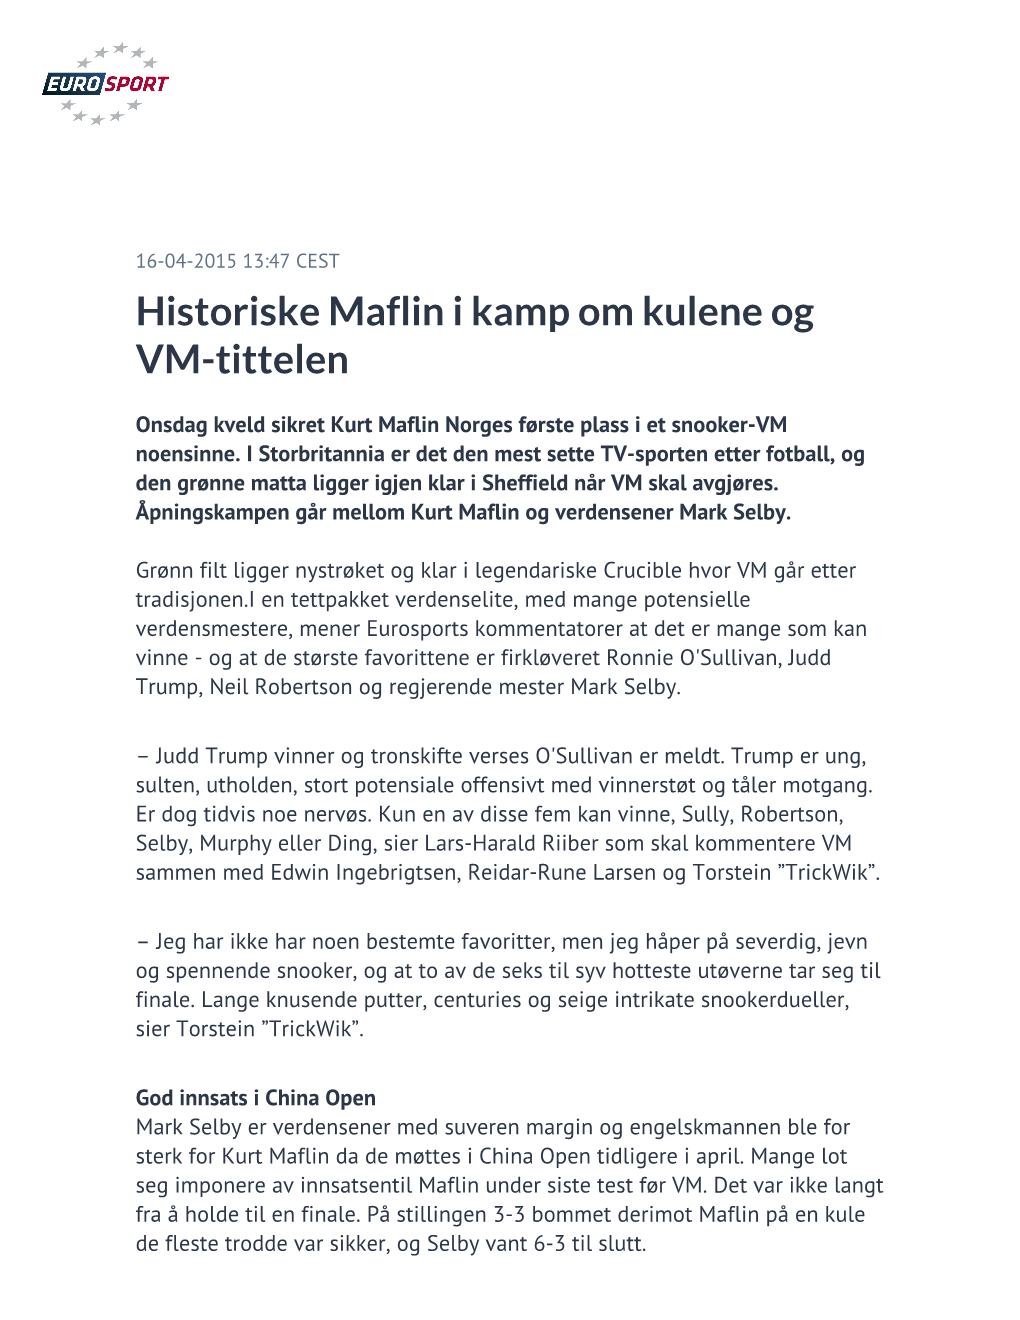 Historiske Maflin I Kamp Om Kulene Og VM-Tittelen